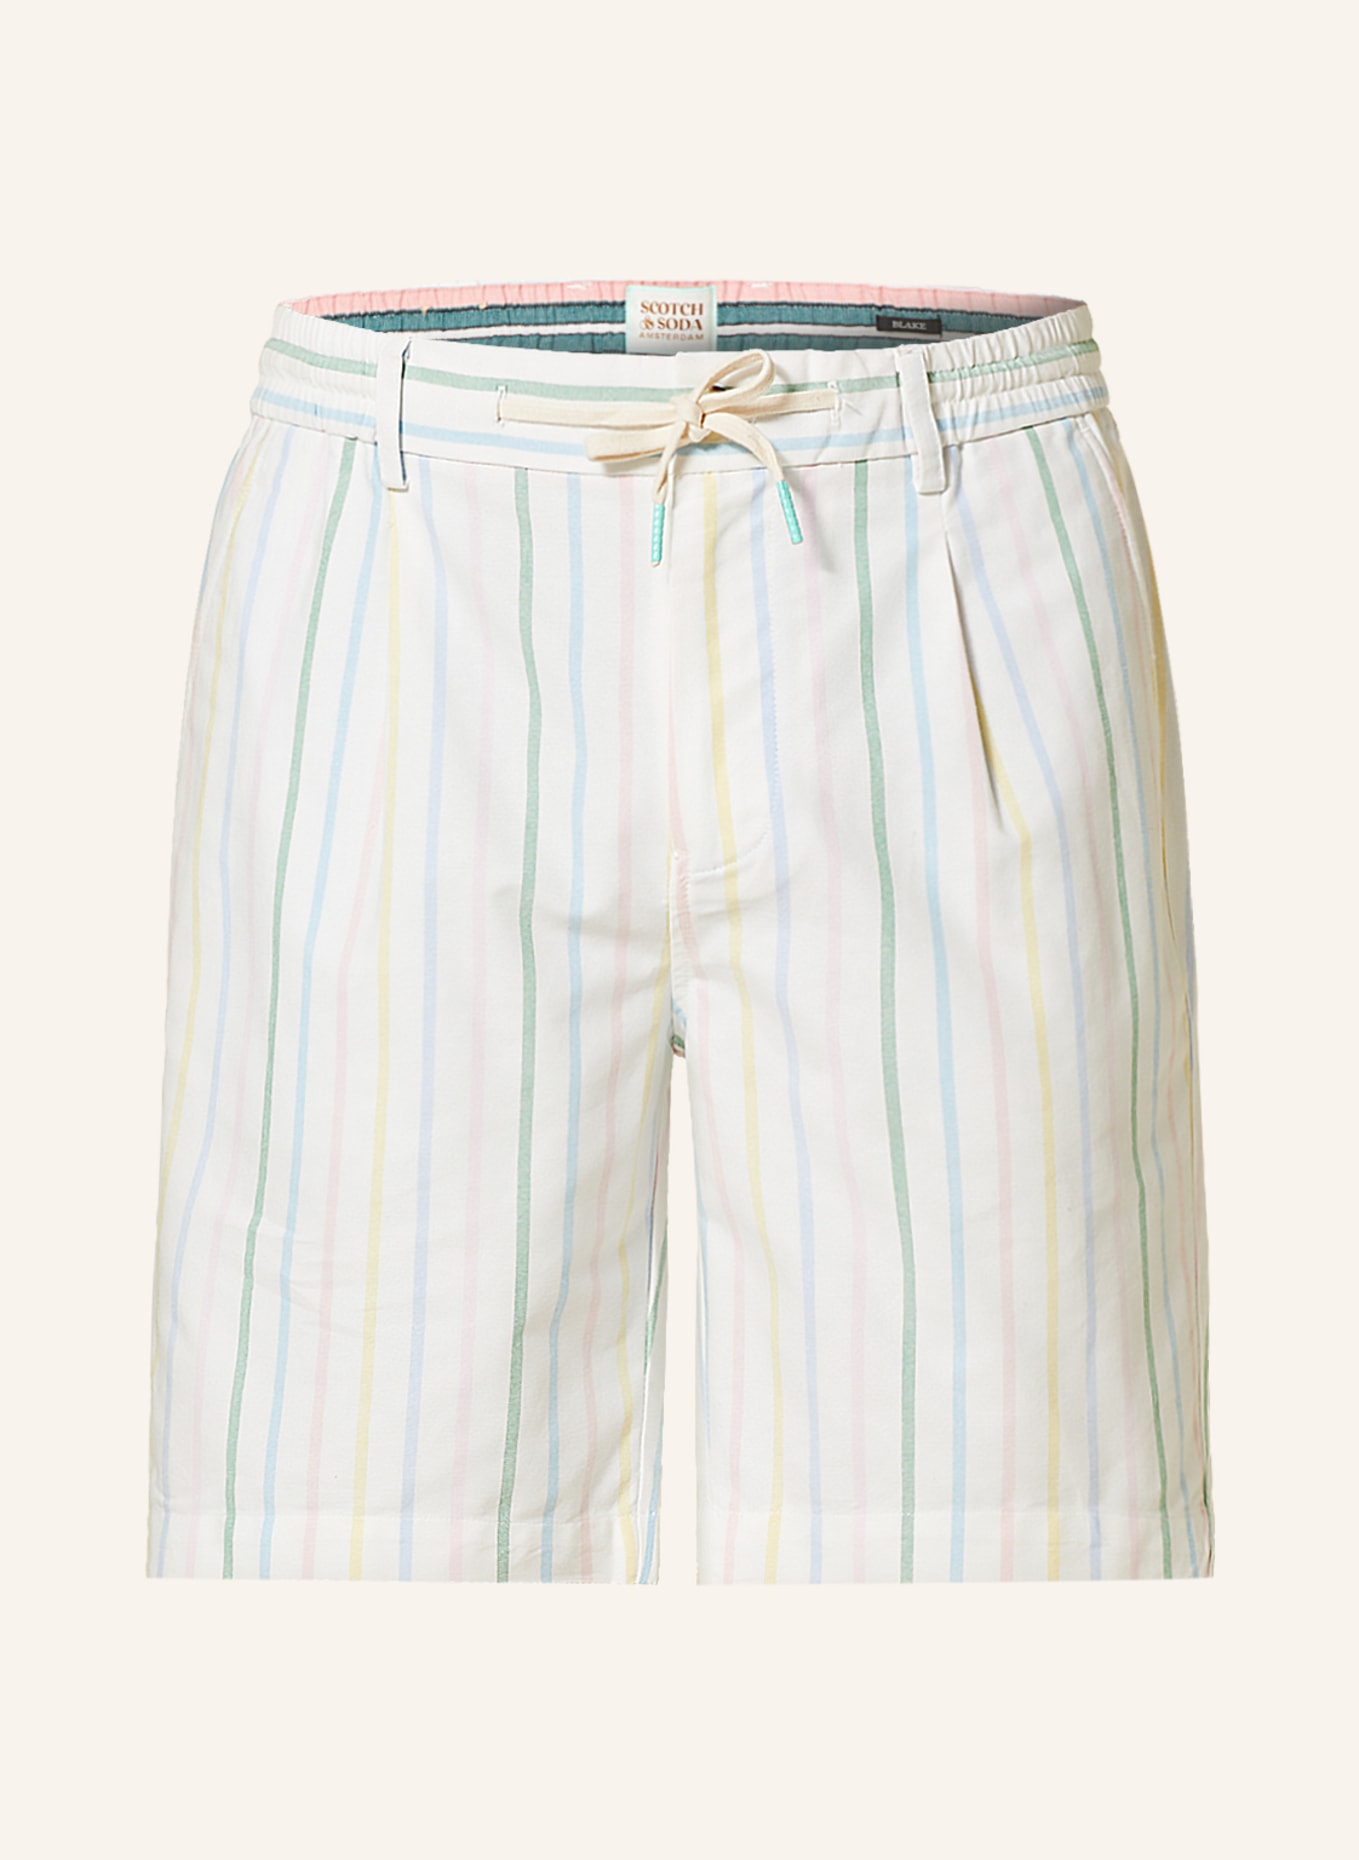 SCOTCH & SODA Shorts BLAKE Regular Slim Fit, Farbe: WEISS/ HELLBLAU/ GRÜN (Bild 1)